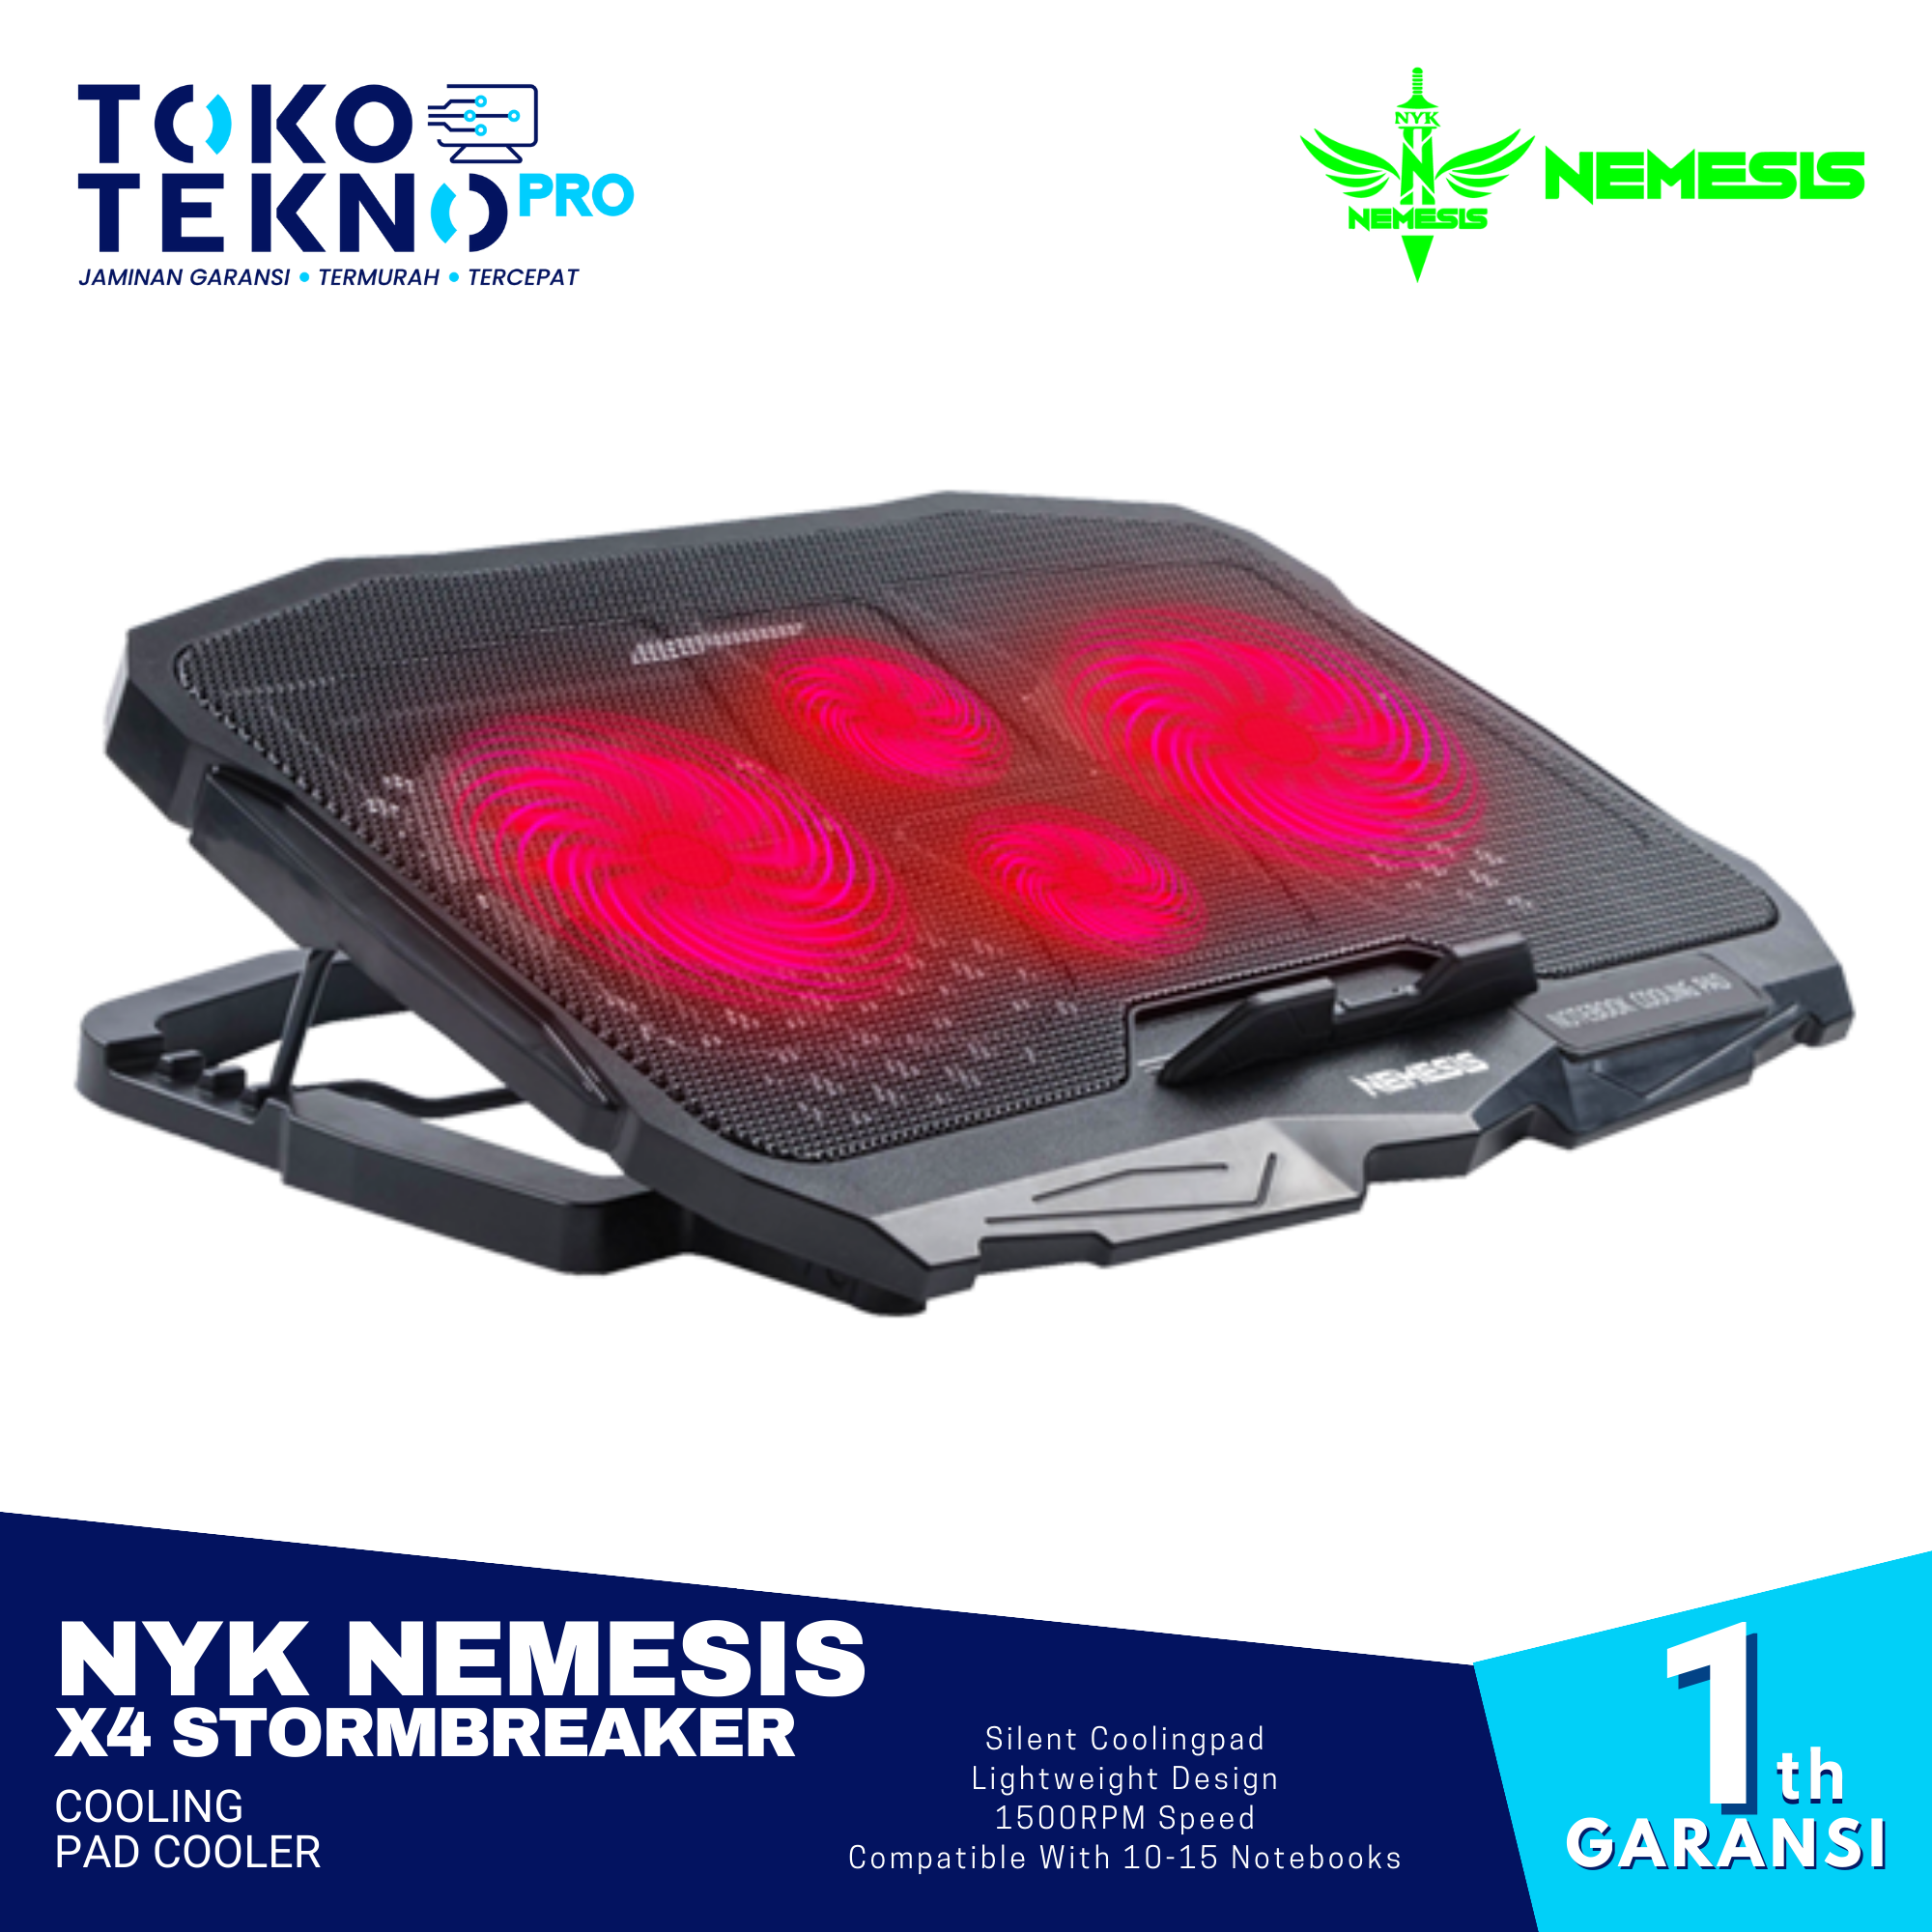 NYK Nemesis X4 Stormbreaker Cooling Pad